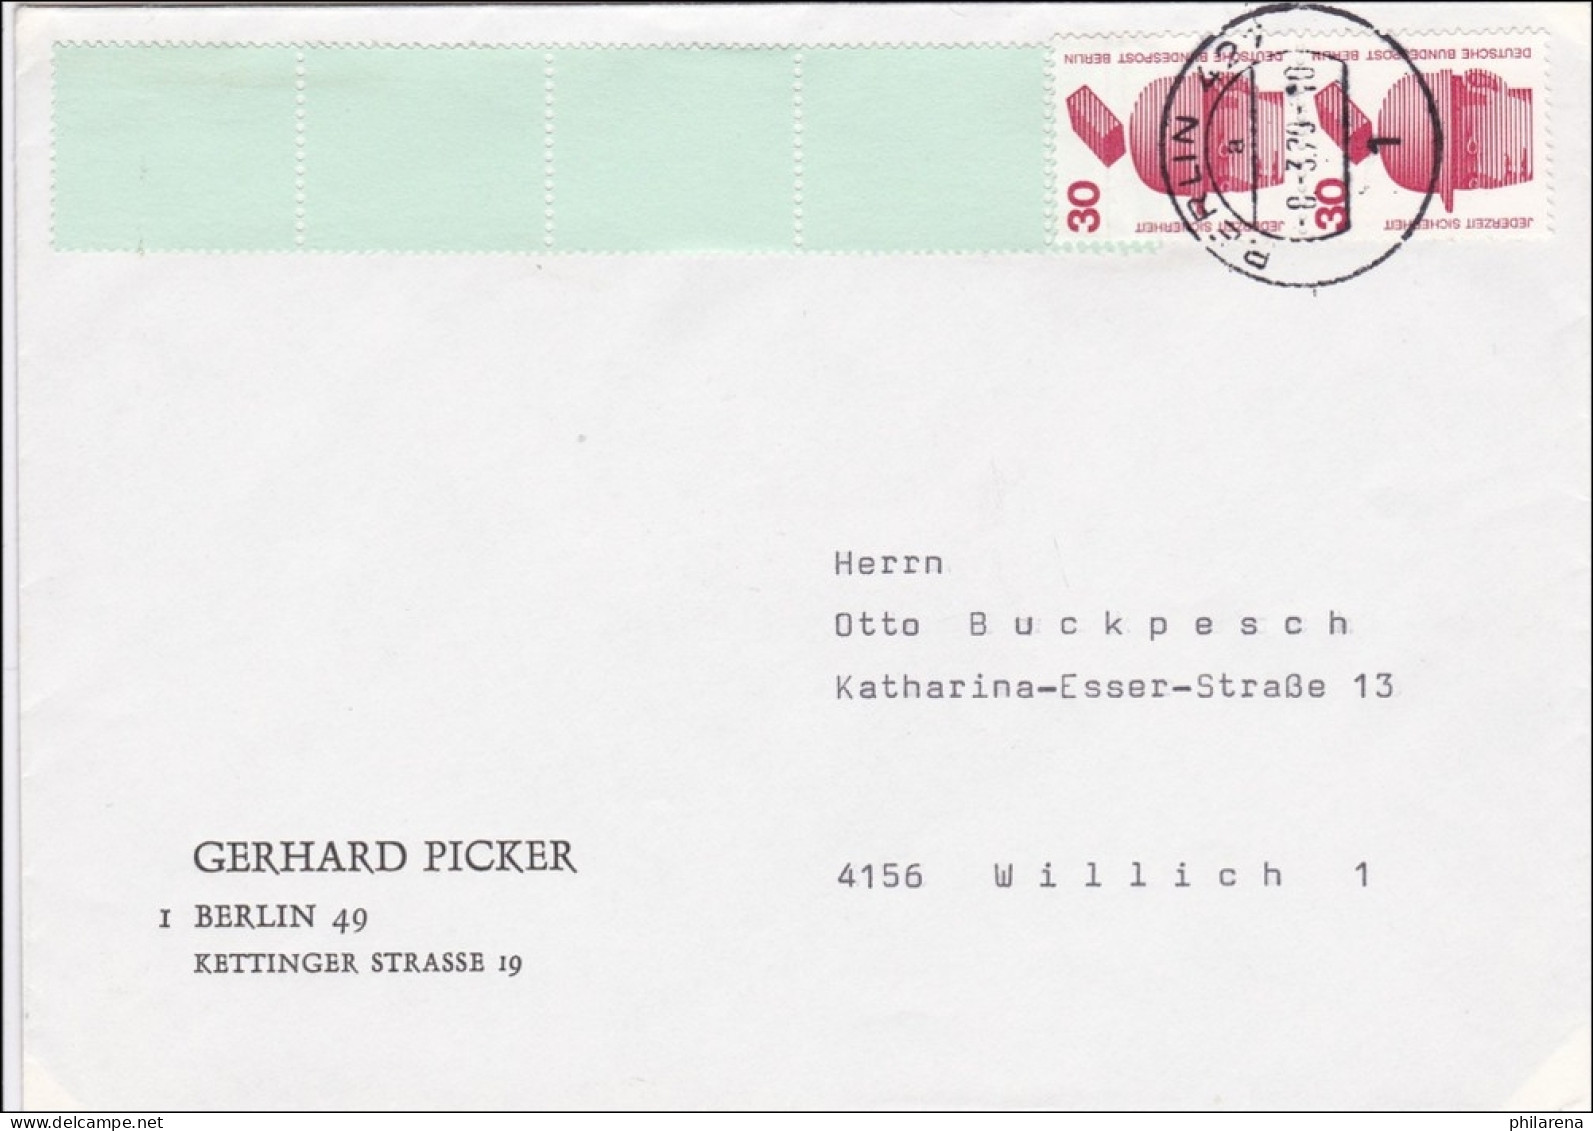 Brief 1979 Nach Willich Mit Rollenendstreifen - Briefe U. Dokumente